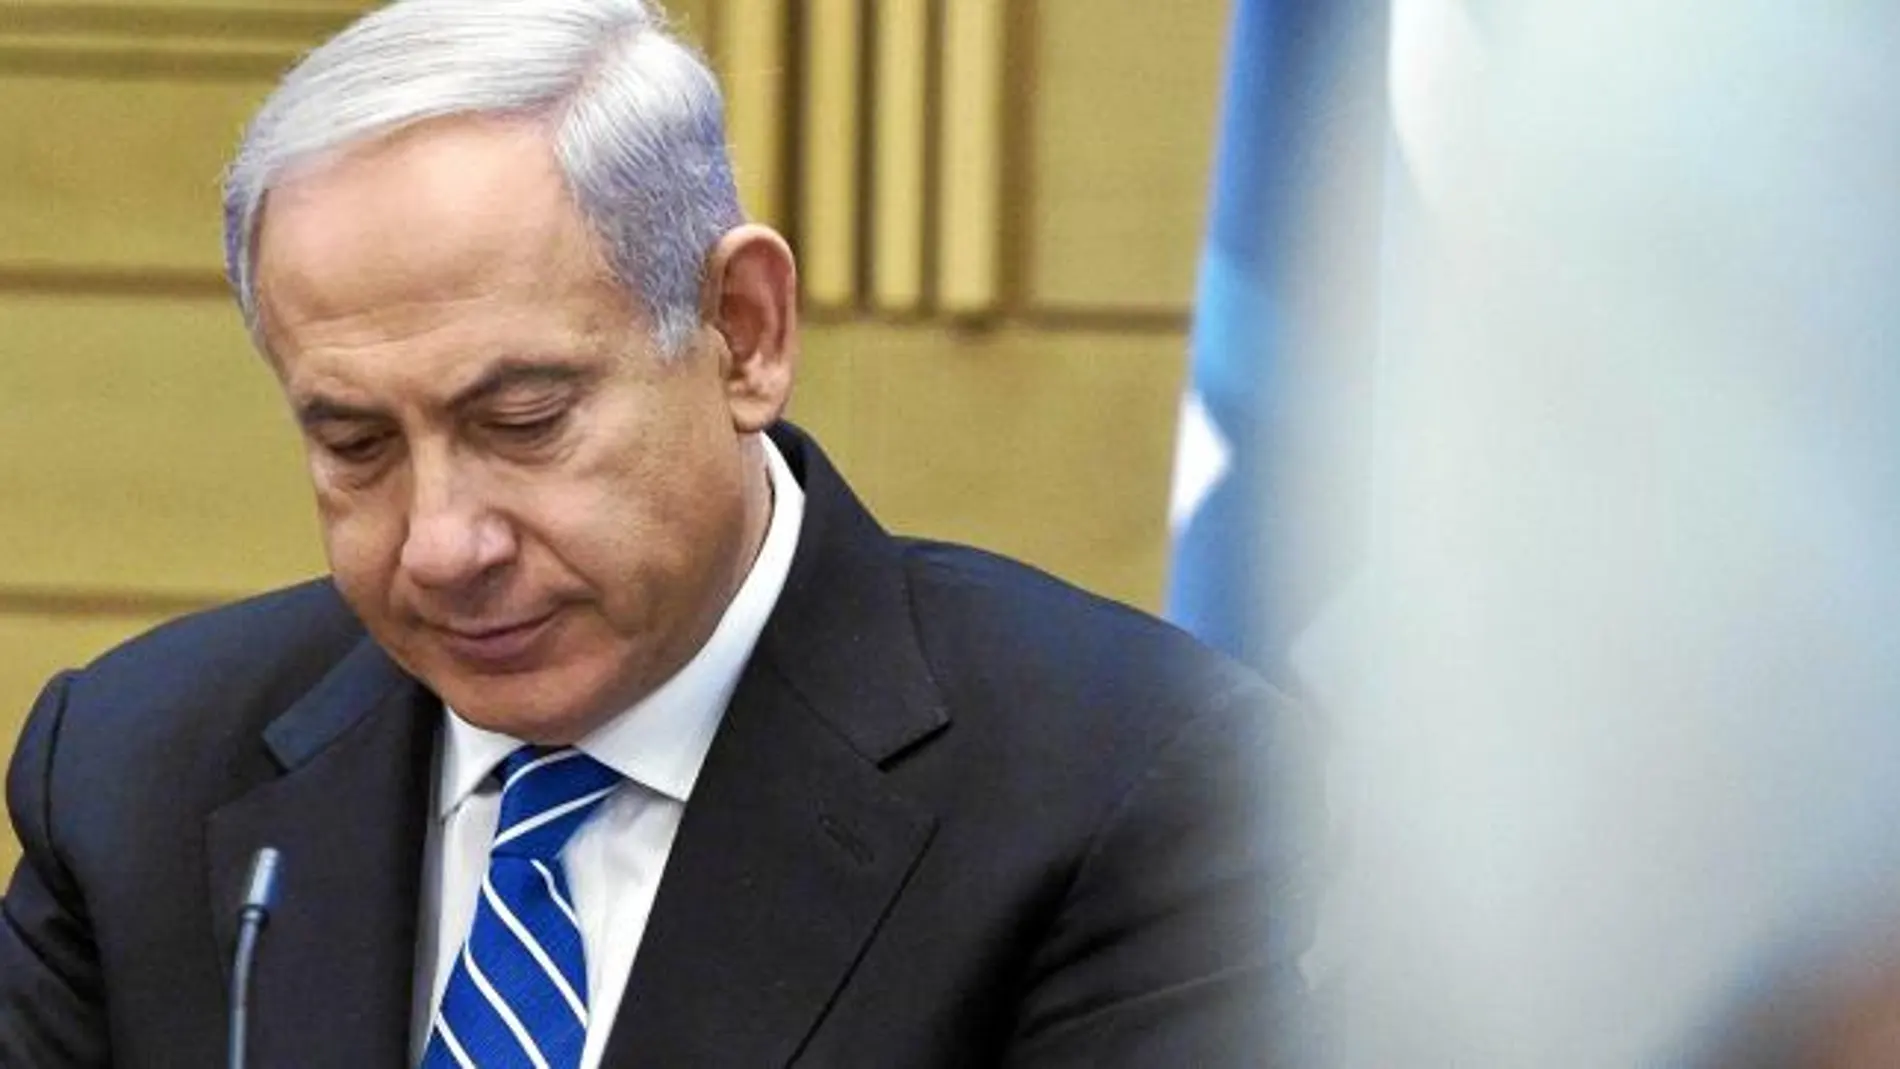 El primer ministro israelí, Benjamin Netanyahu, durante una reunión en el Parlamento